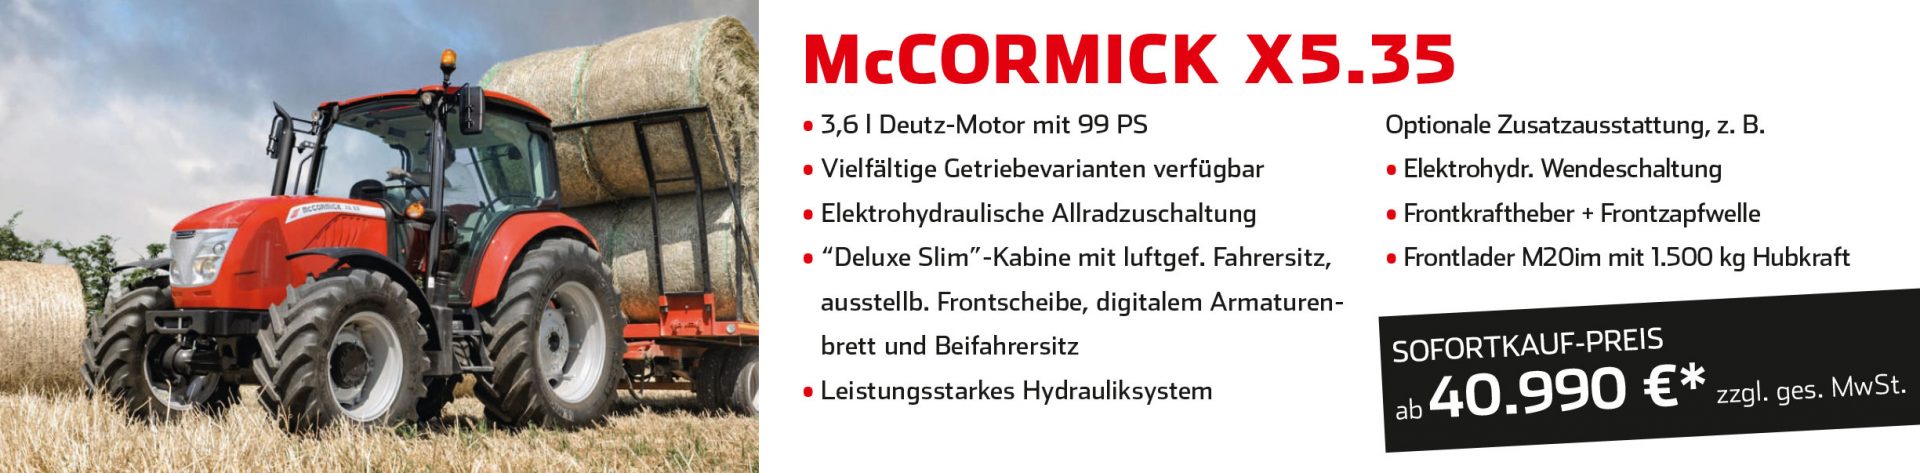 McCormick Sofortkauf-Aktion bei Land- und Gartentechnik Gstöttenmeier, Wartberg ob der Aist, Freistadt